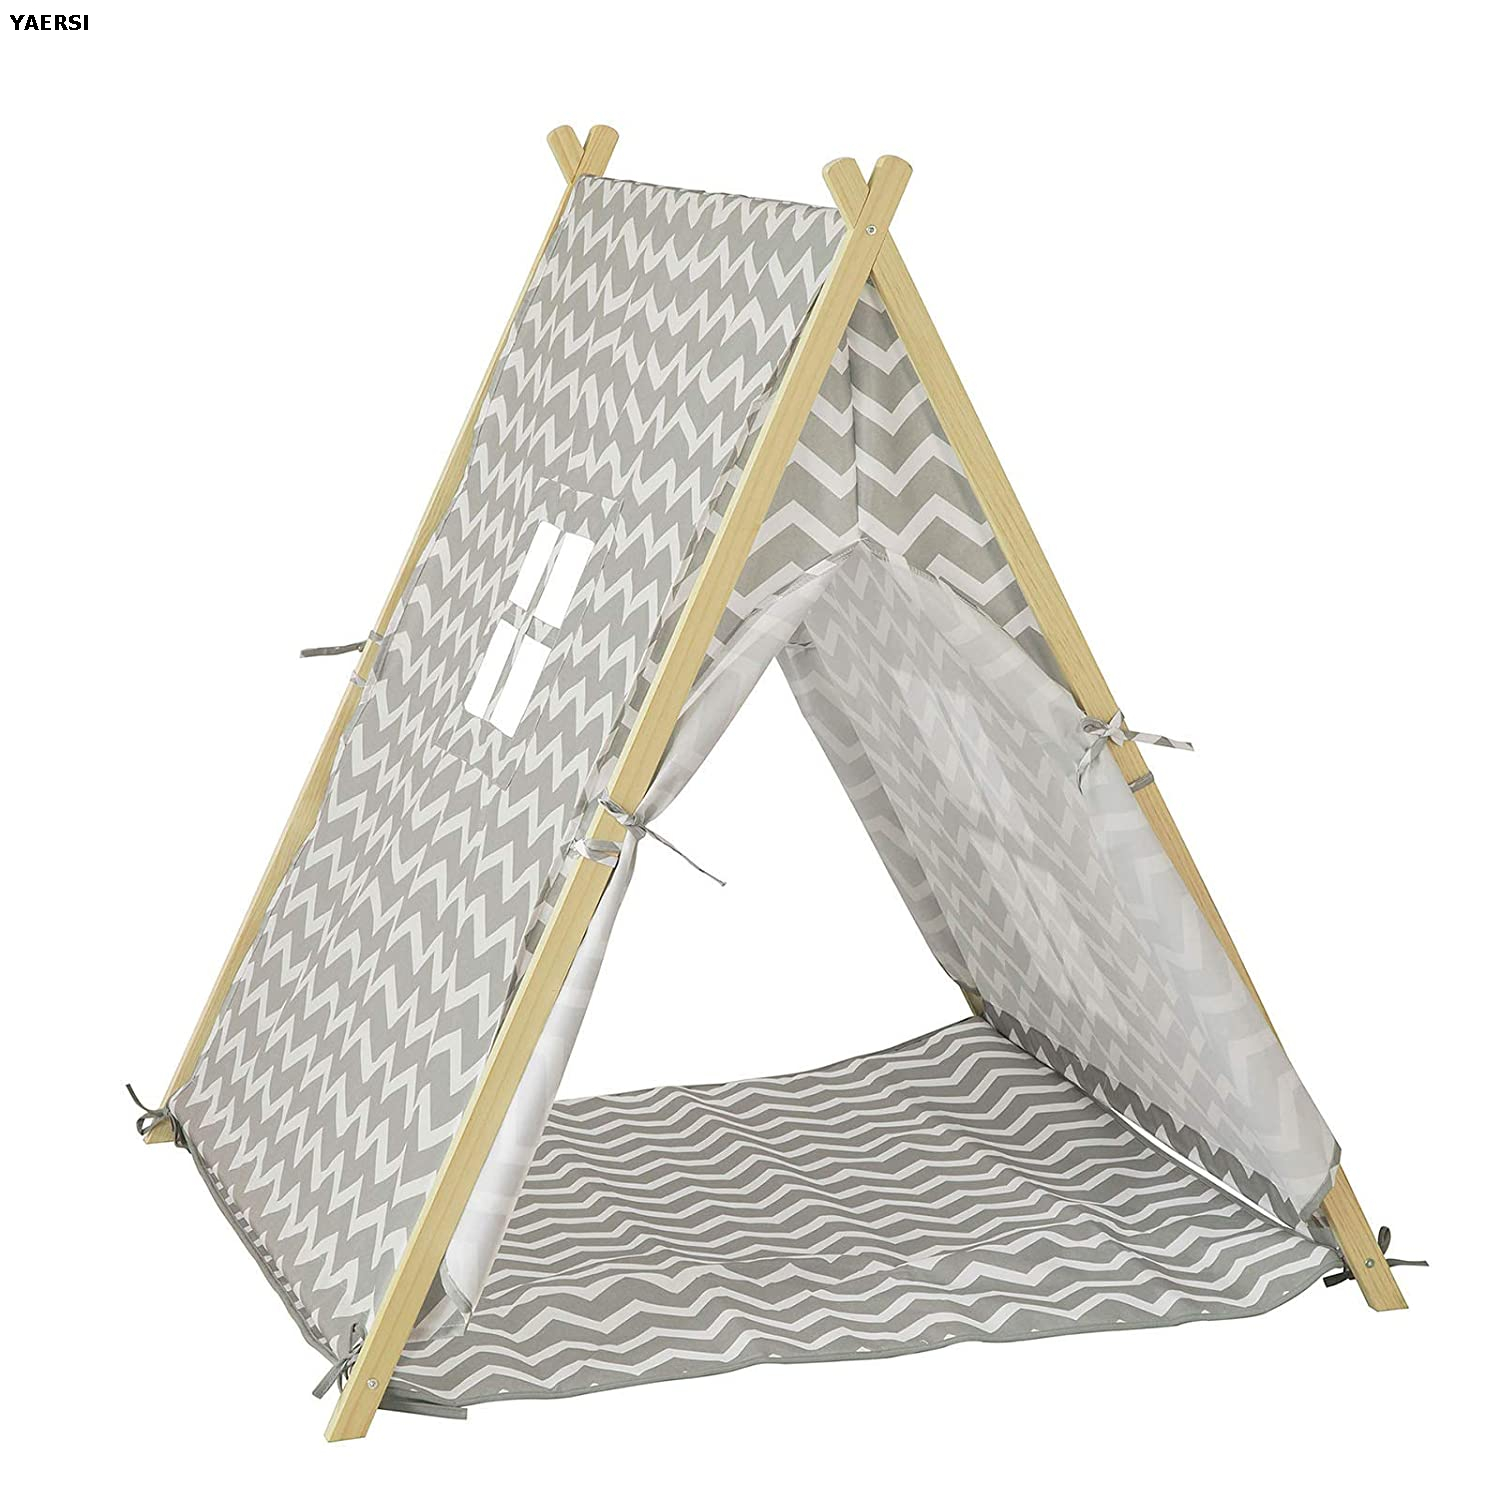  Teepee Tent for Outdoor & Indoor